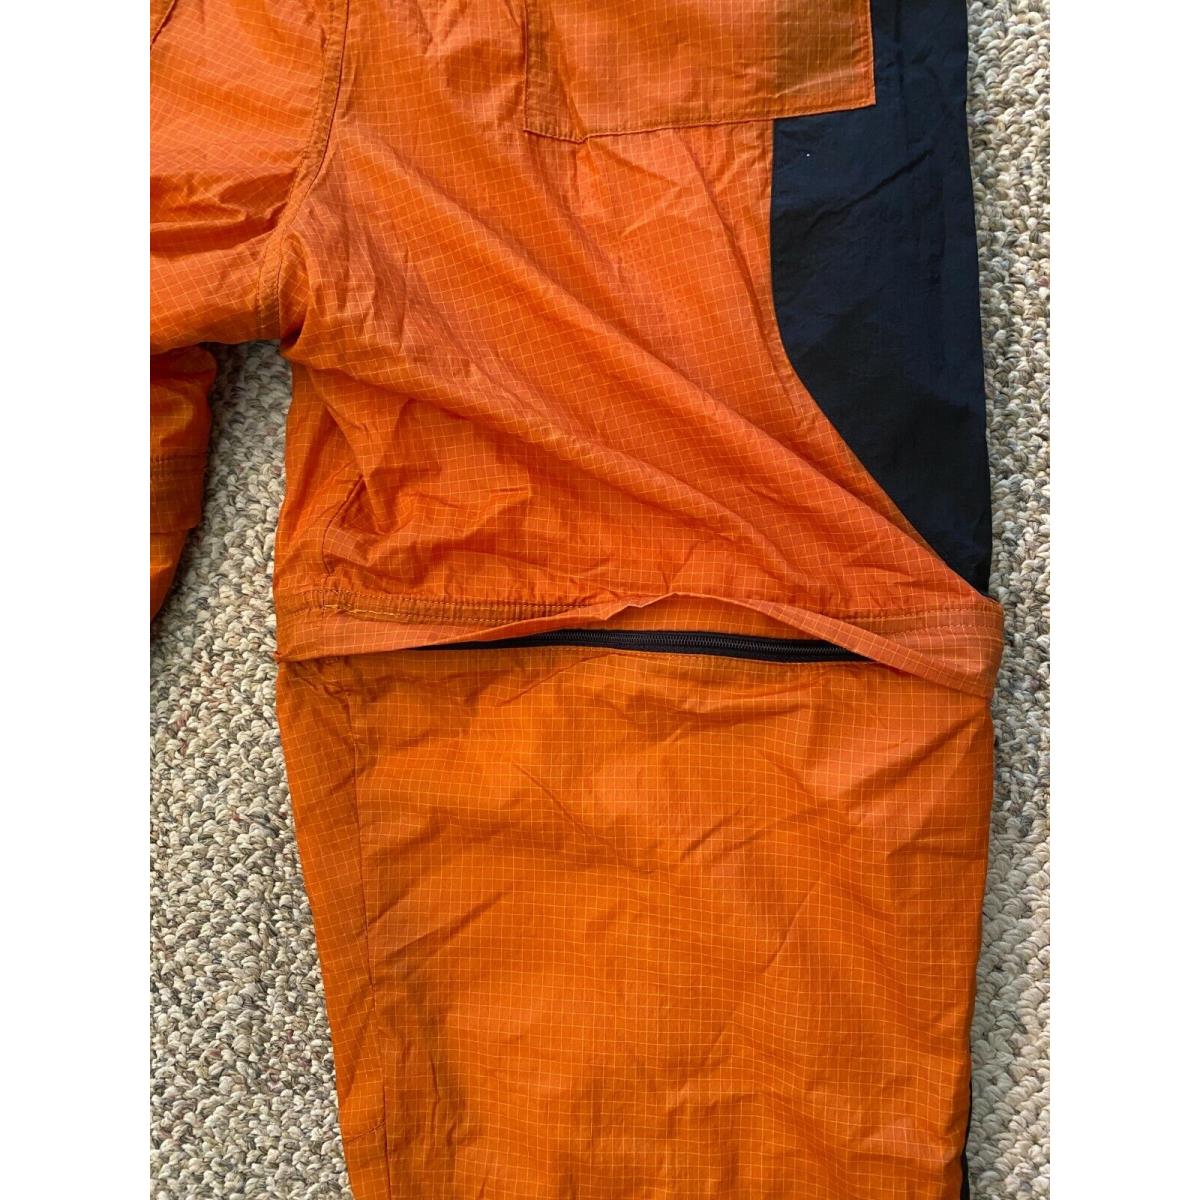 Nike clothing Engineered - Orange 5